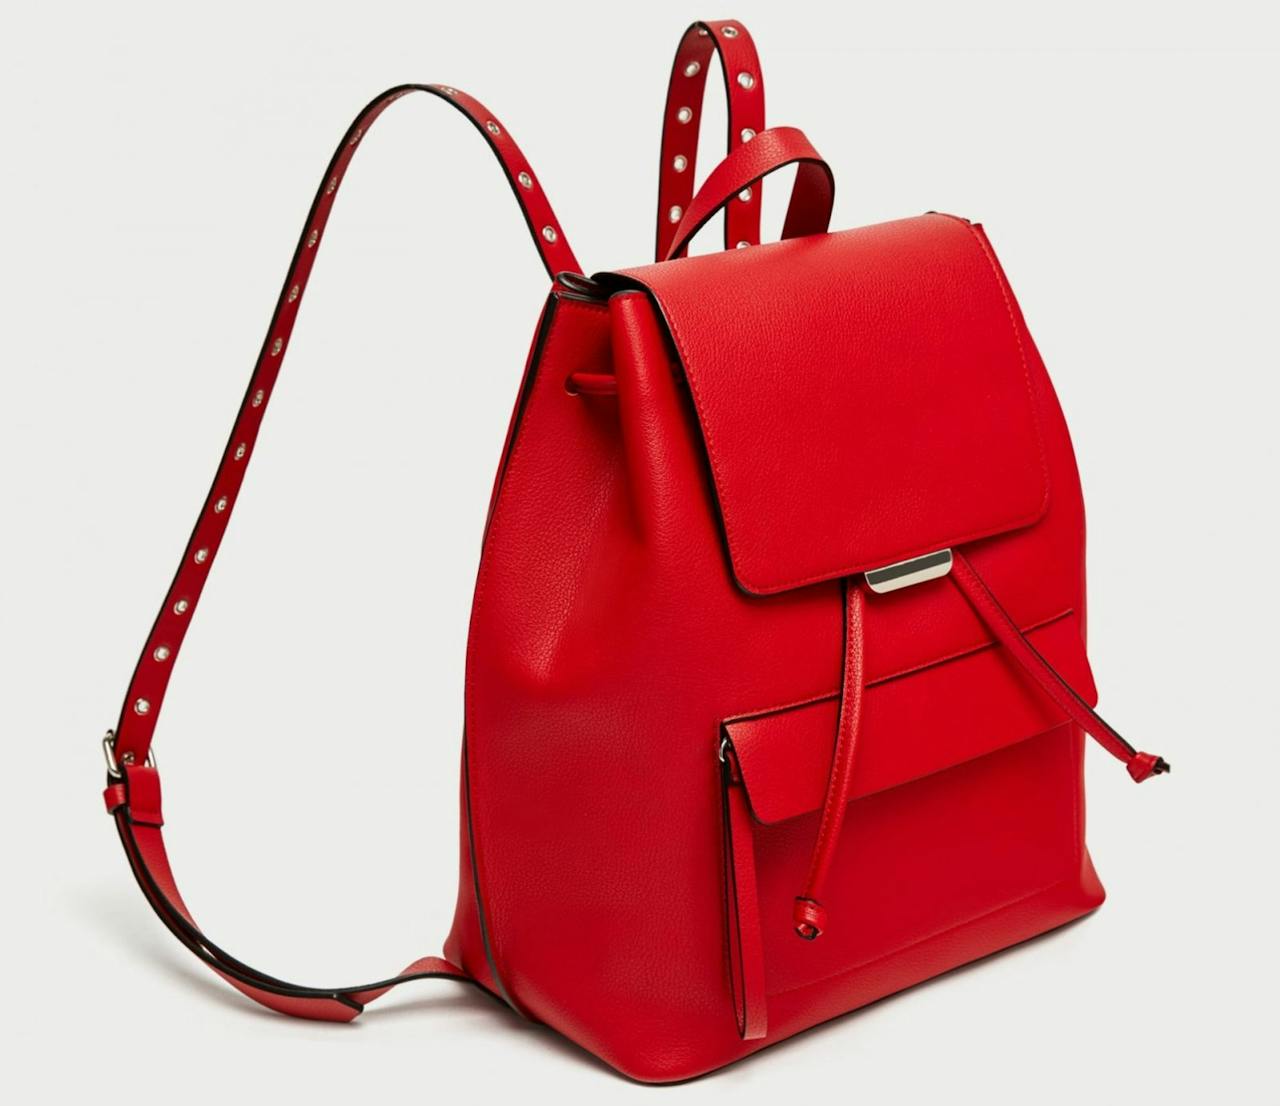 Bolso mochila ollados de color rojo de Zara, por 5,99 euros (antes 19,95)